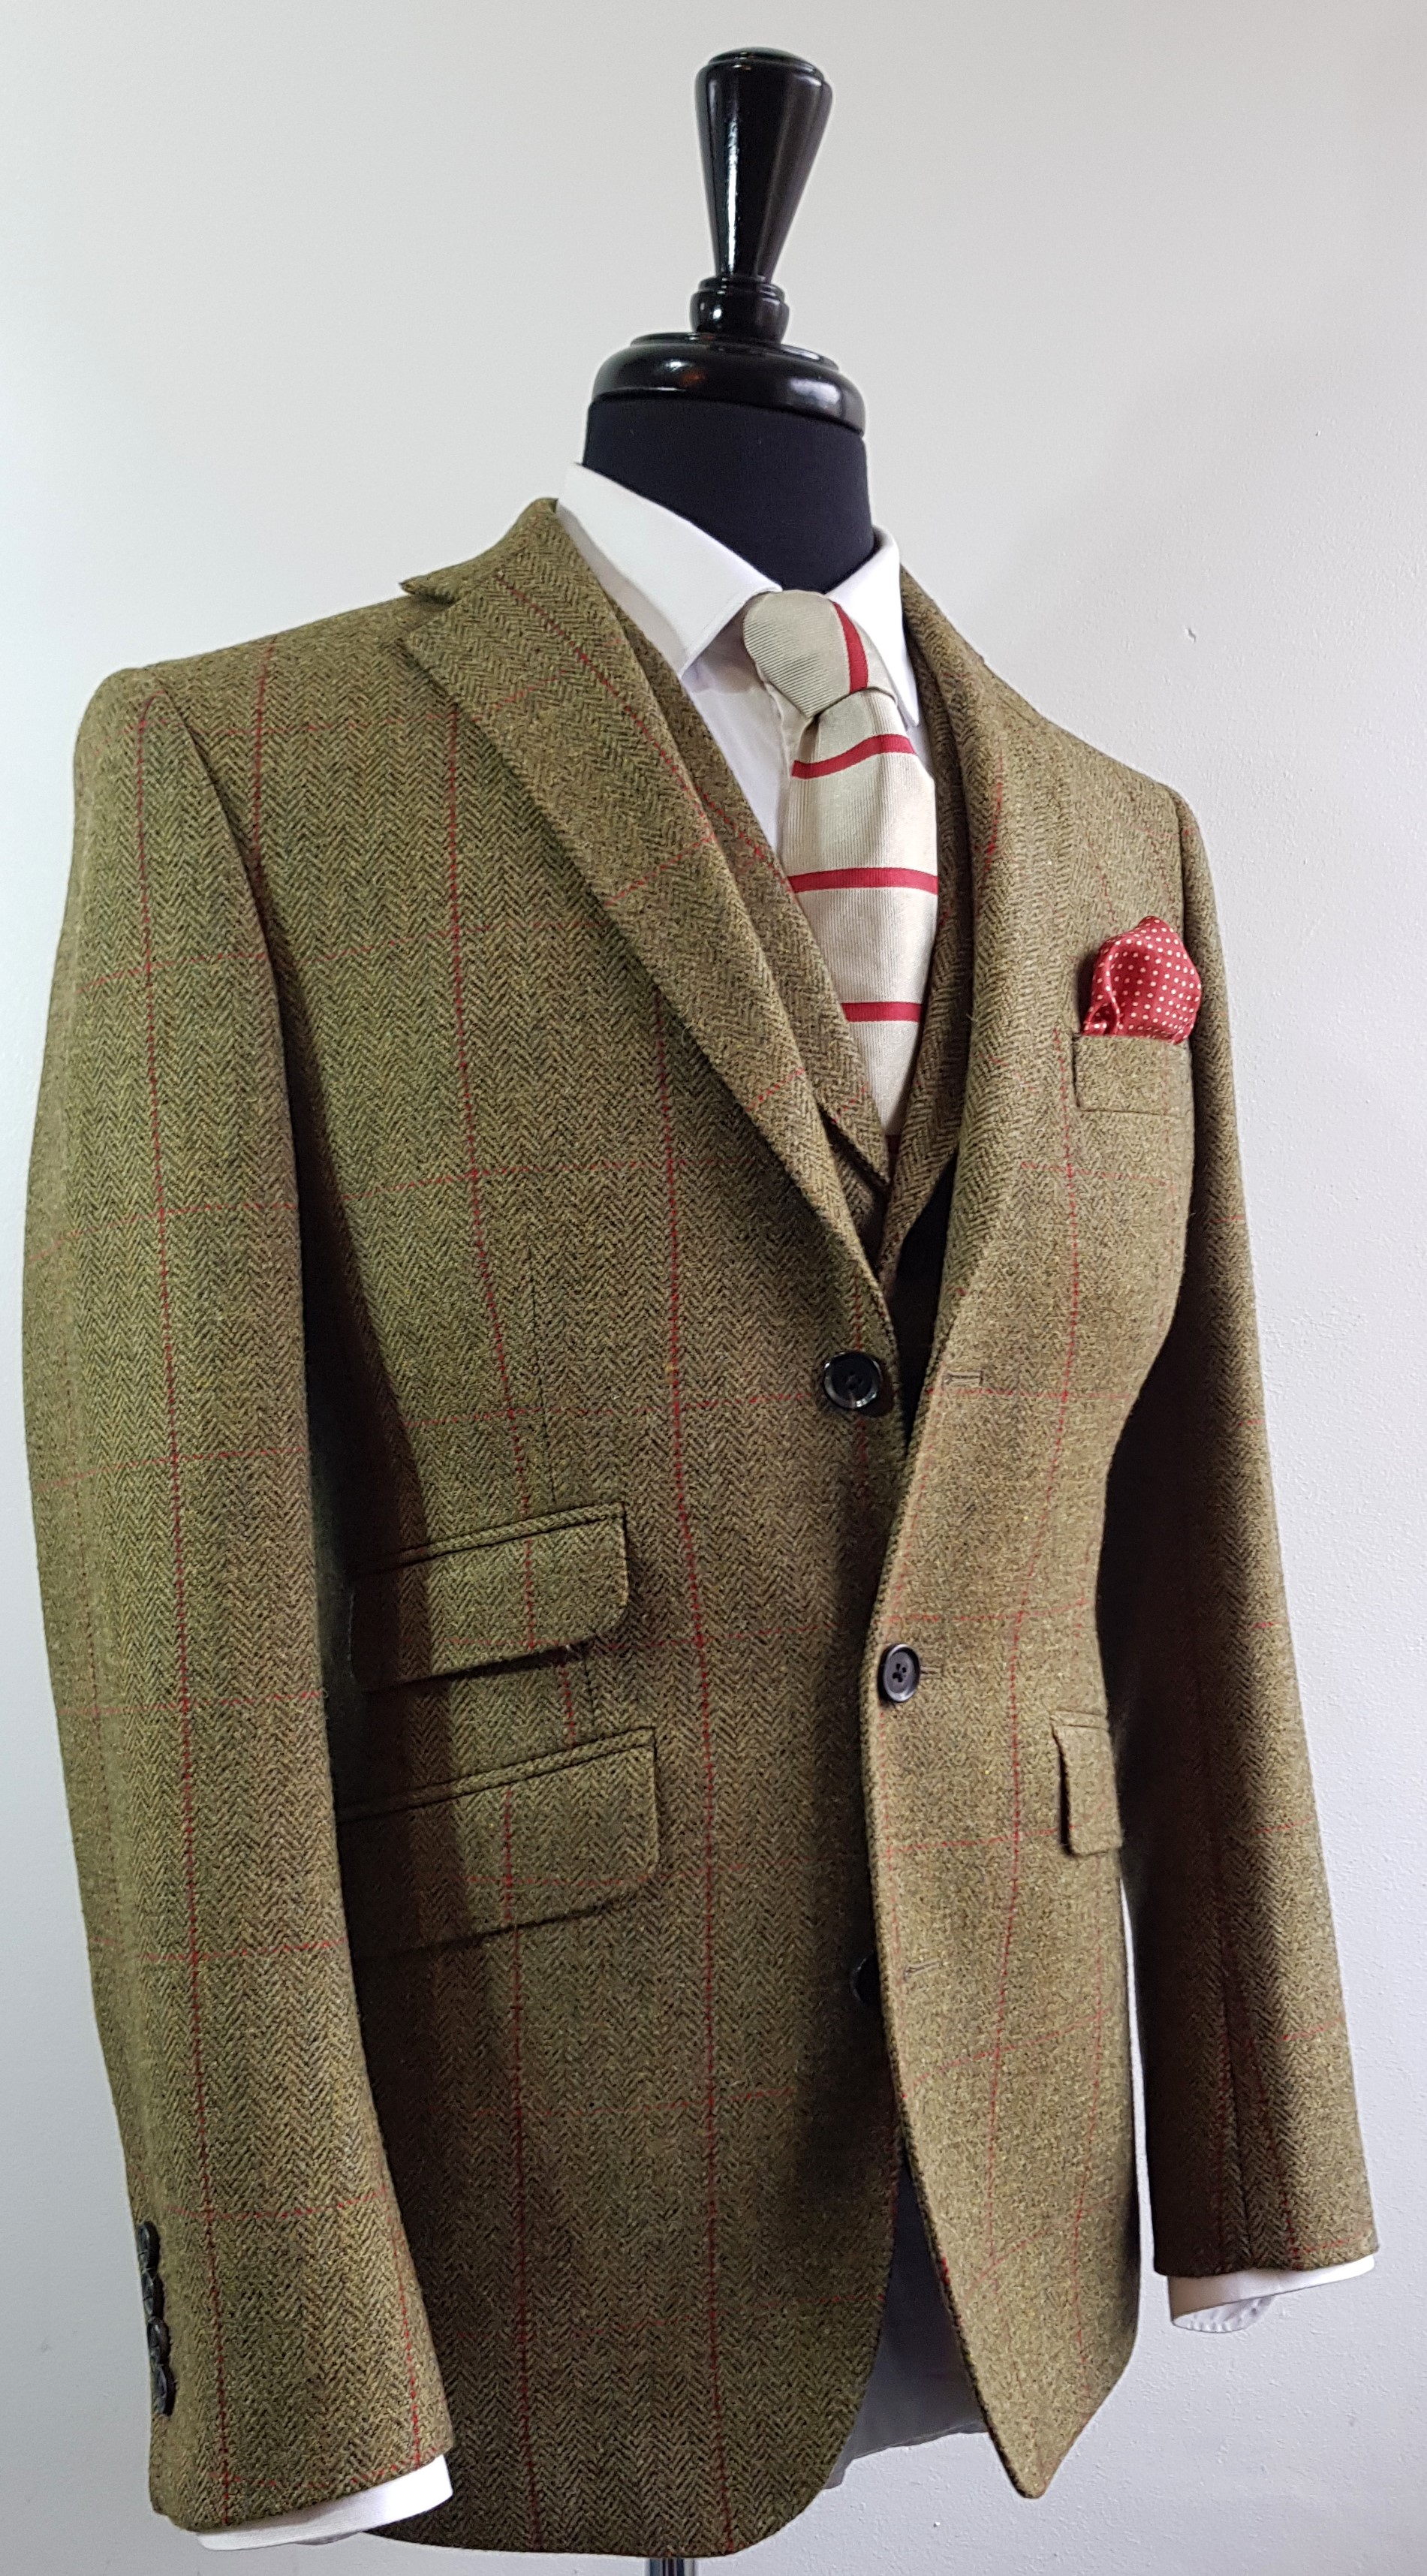 Tweed Jacket and Tweed Waistcoat (10).jpg